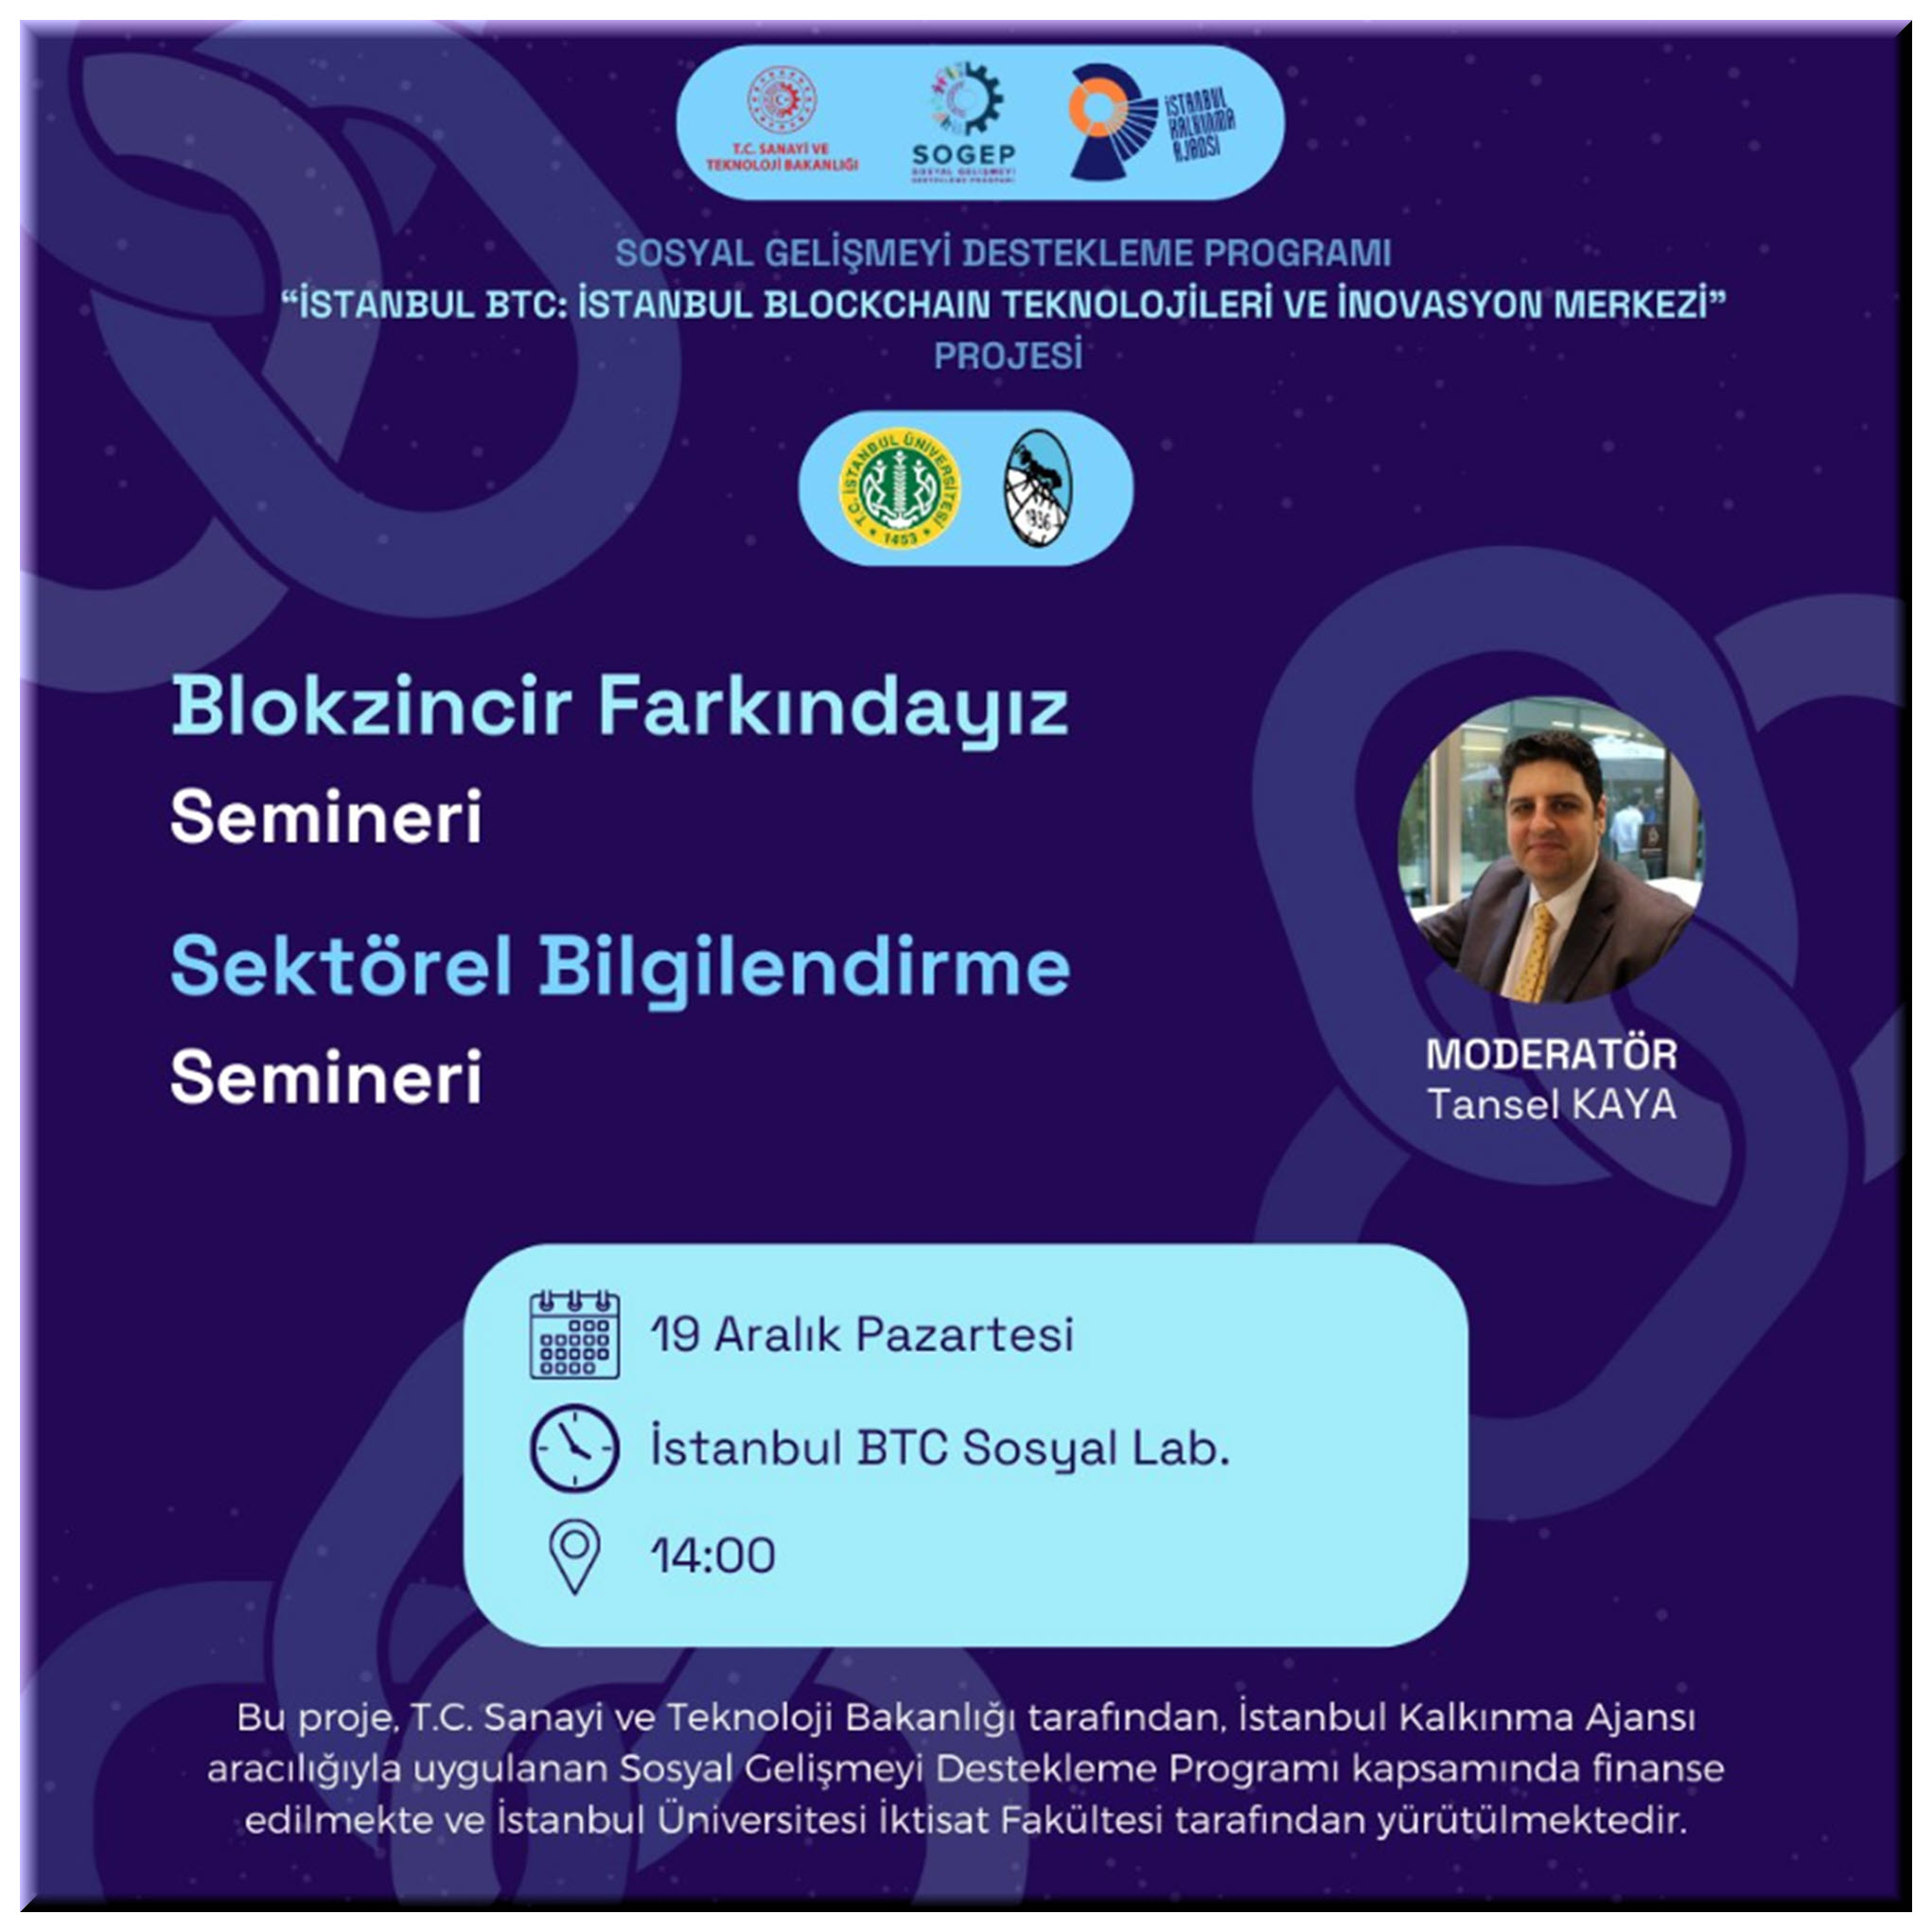 Blockzincir Farkındayız Semineri / İSTANBUL BTC